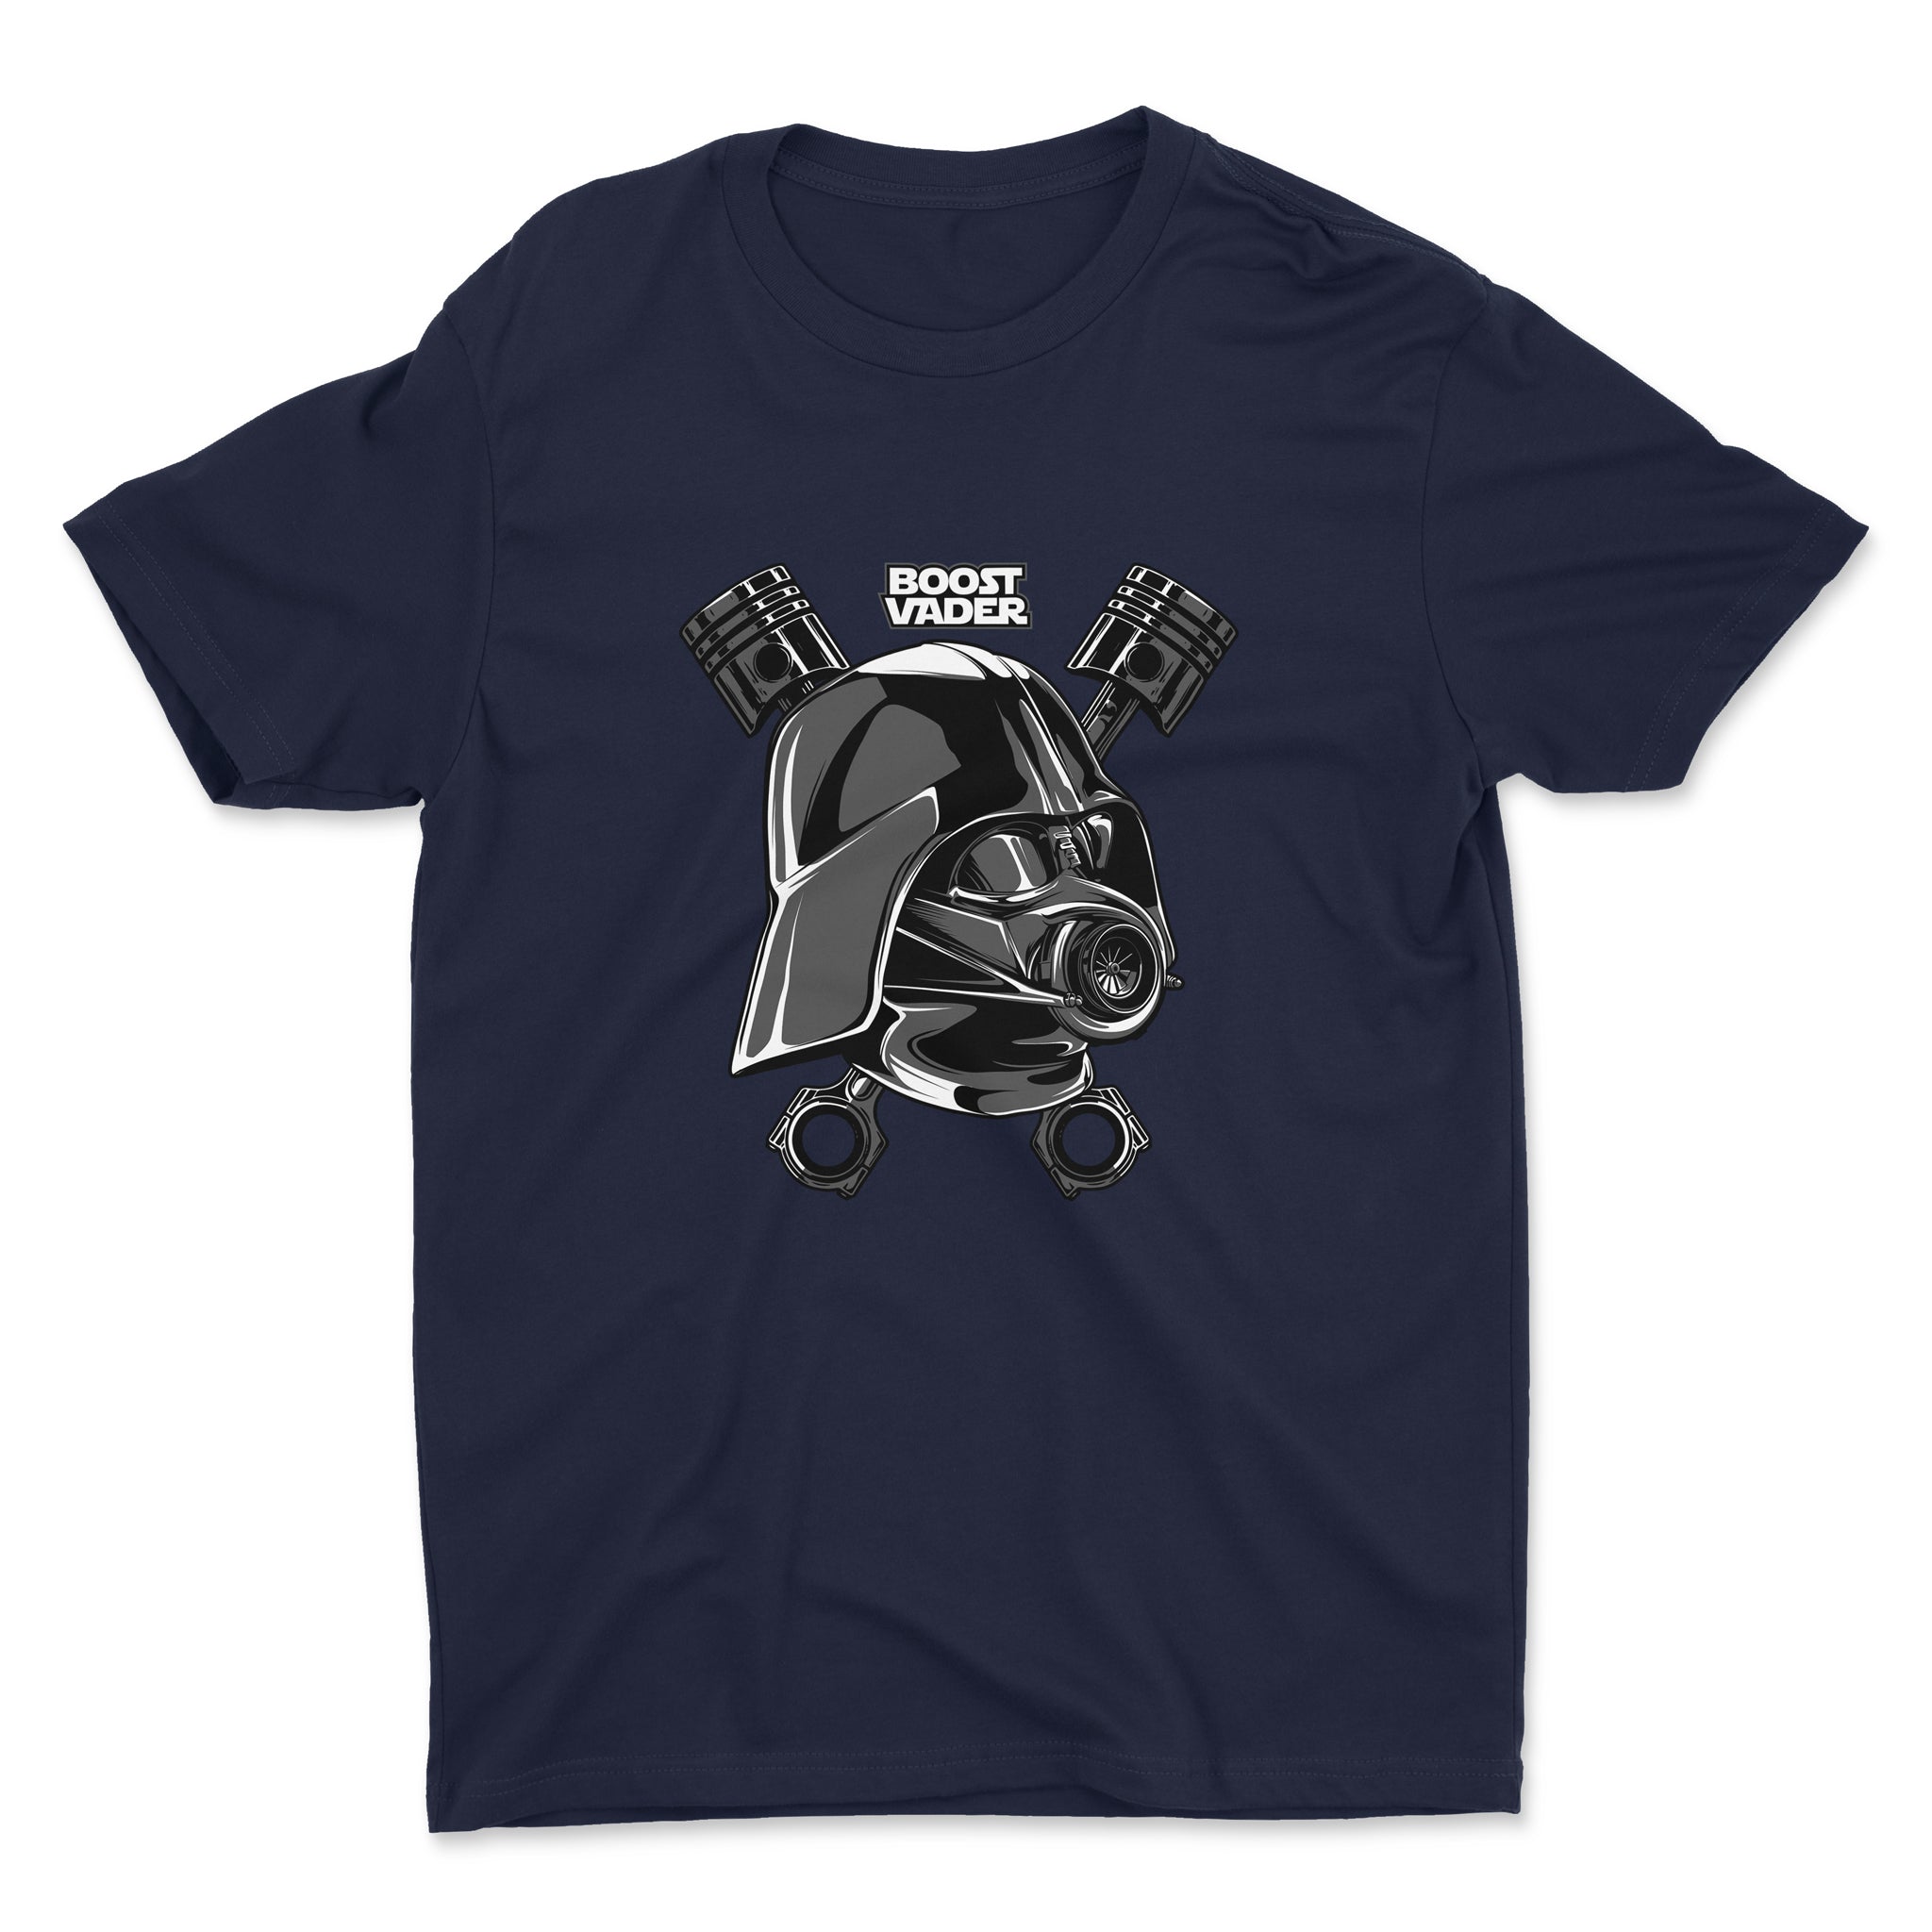 Boost Vader - Darth Vader and Turbo - Car T-Shirt Navy.